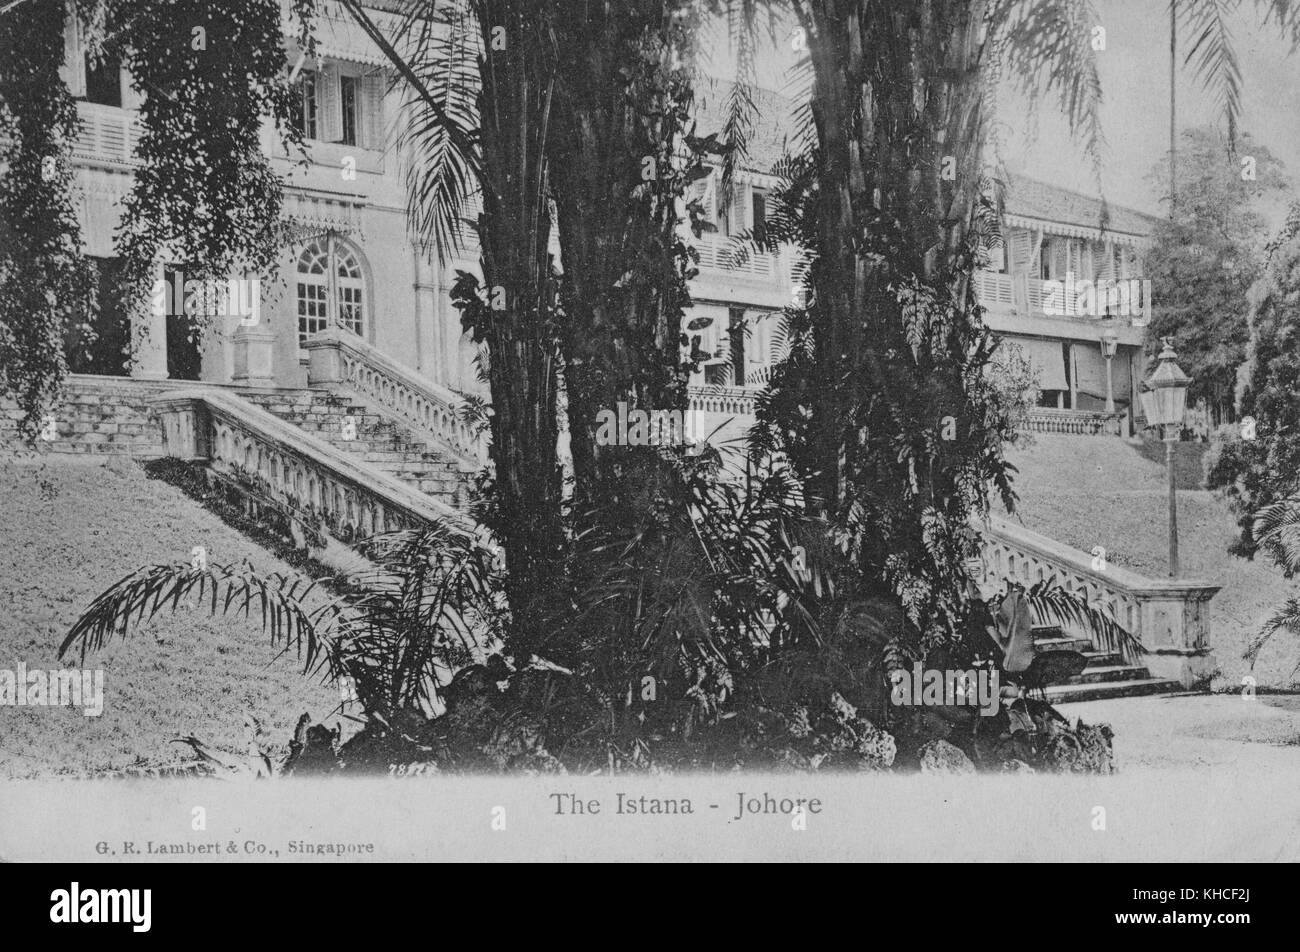 Carte postale montrant l'avant d'un grand bâtiment, avec des palmiers et d'autres végétation, intitulé Istana - Johore, palais royal du Sultan de Johor qui est situé à Johor Bahru, Malaisie, 1904. De la bibliothèque publique de New York. Banque D'Images